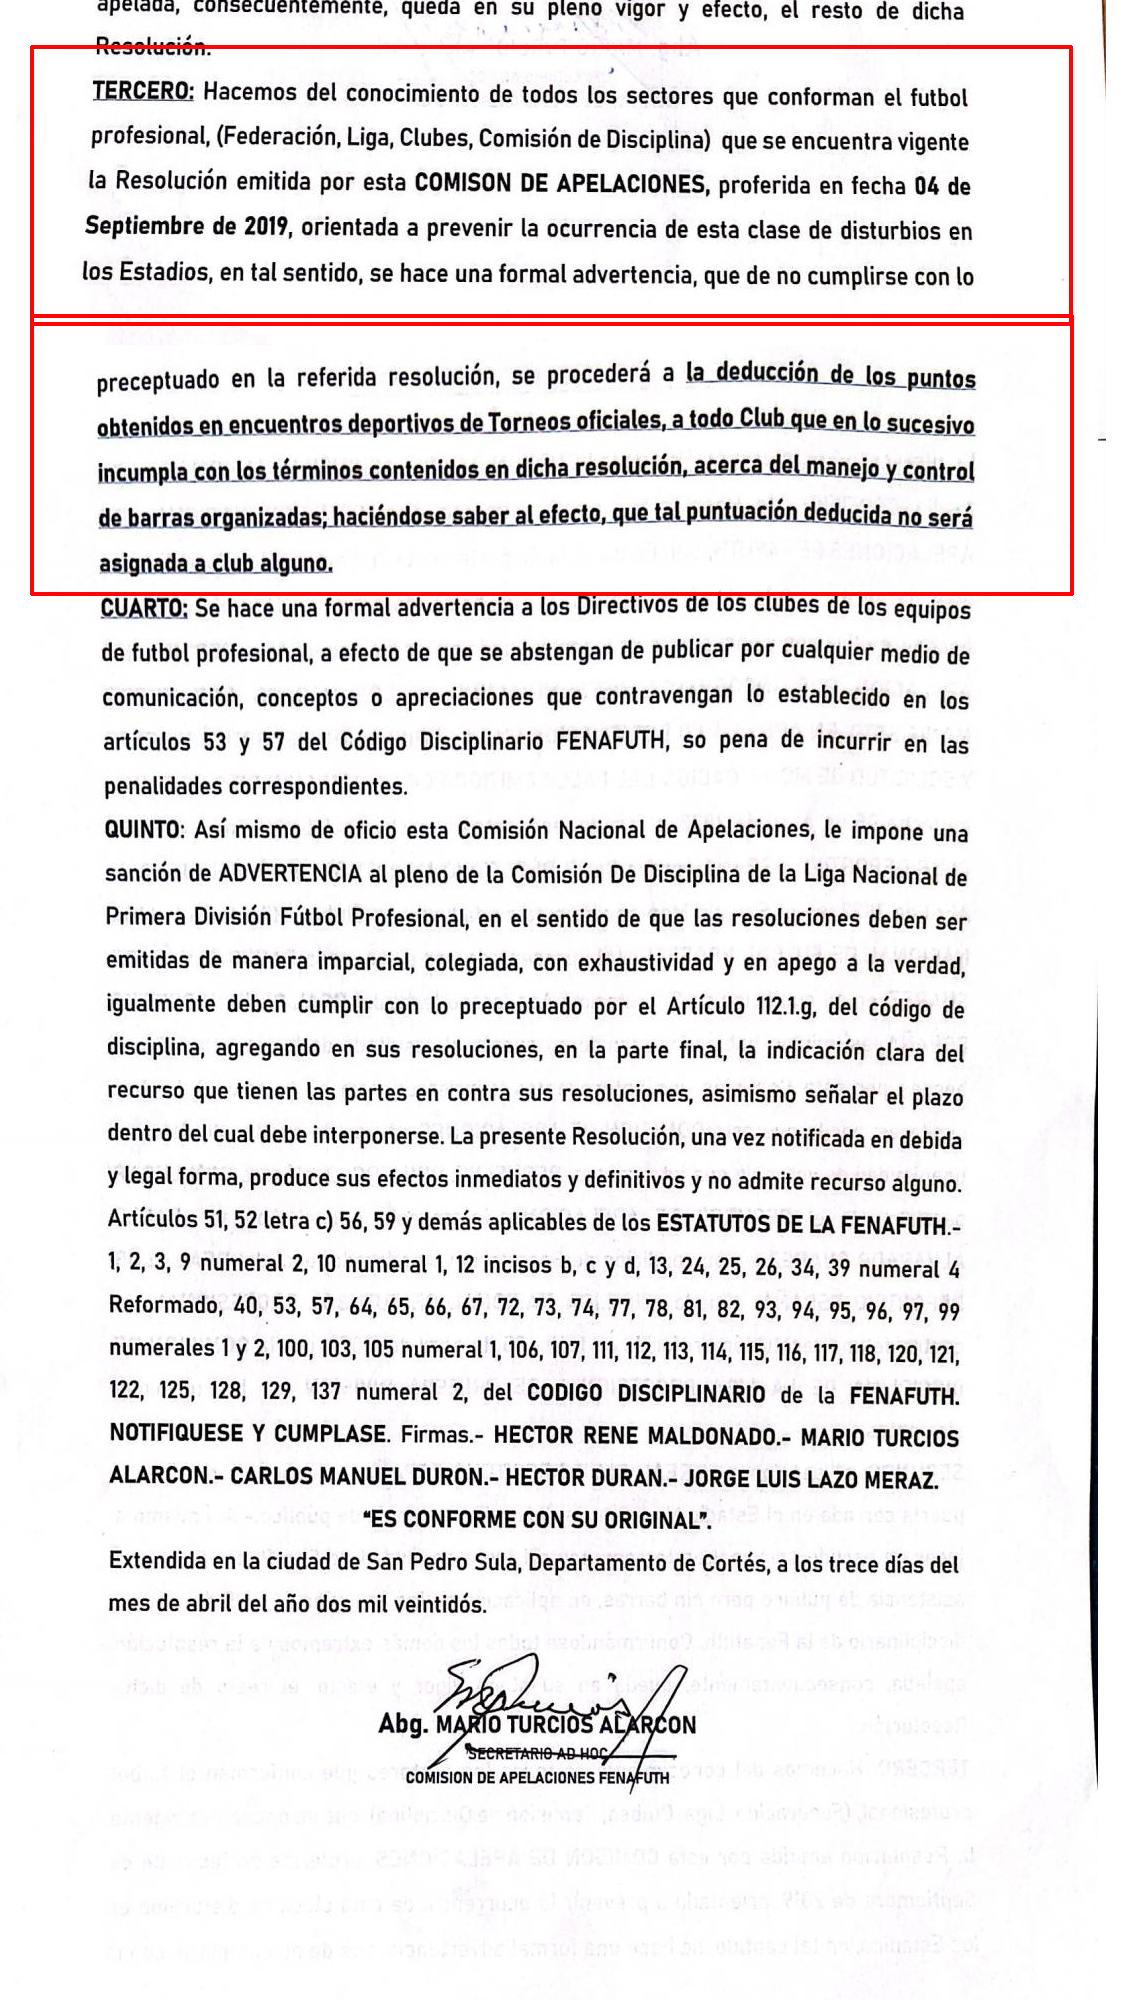 Resolución de la Comisión de Apelaciones tras recurso presentado por Real España.